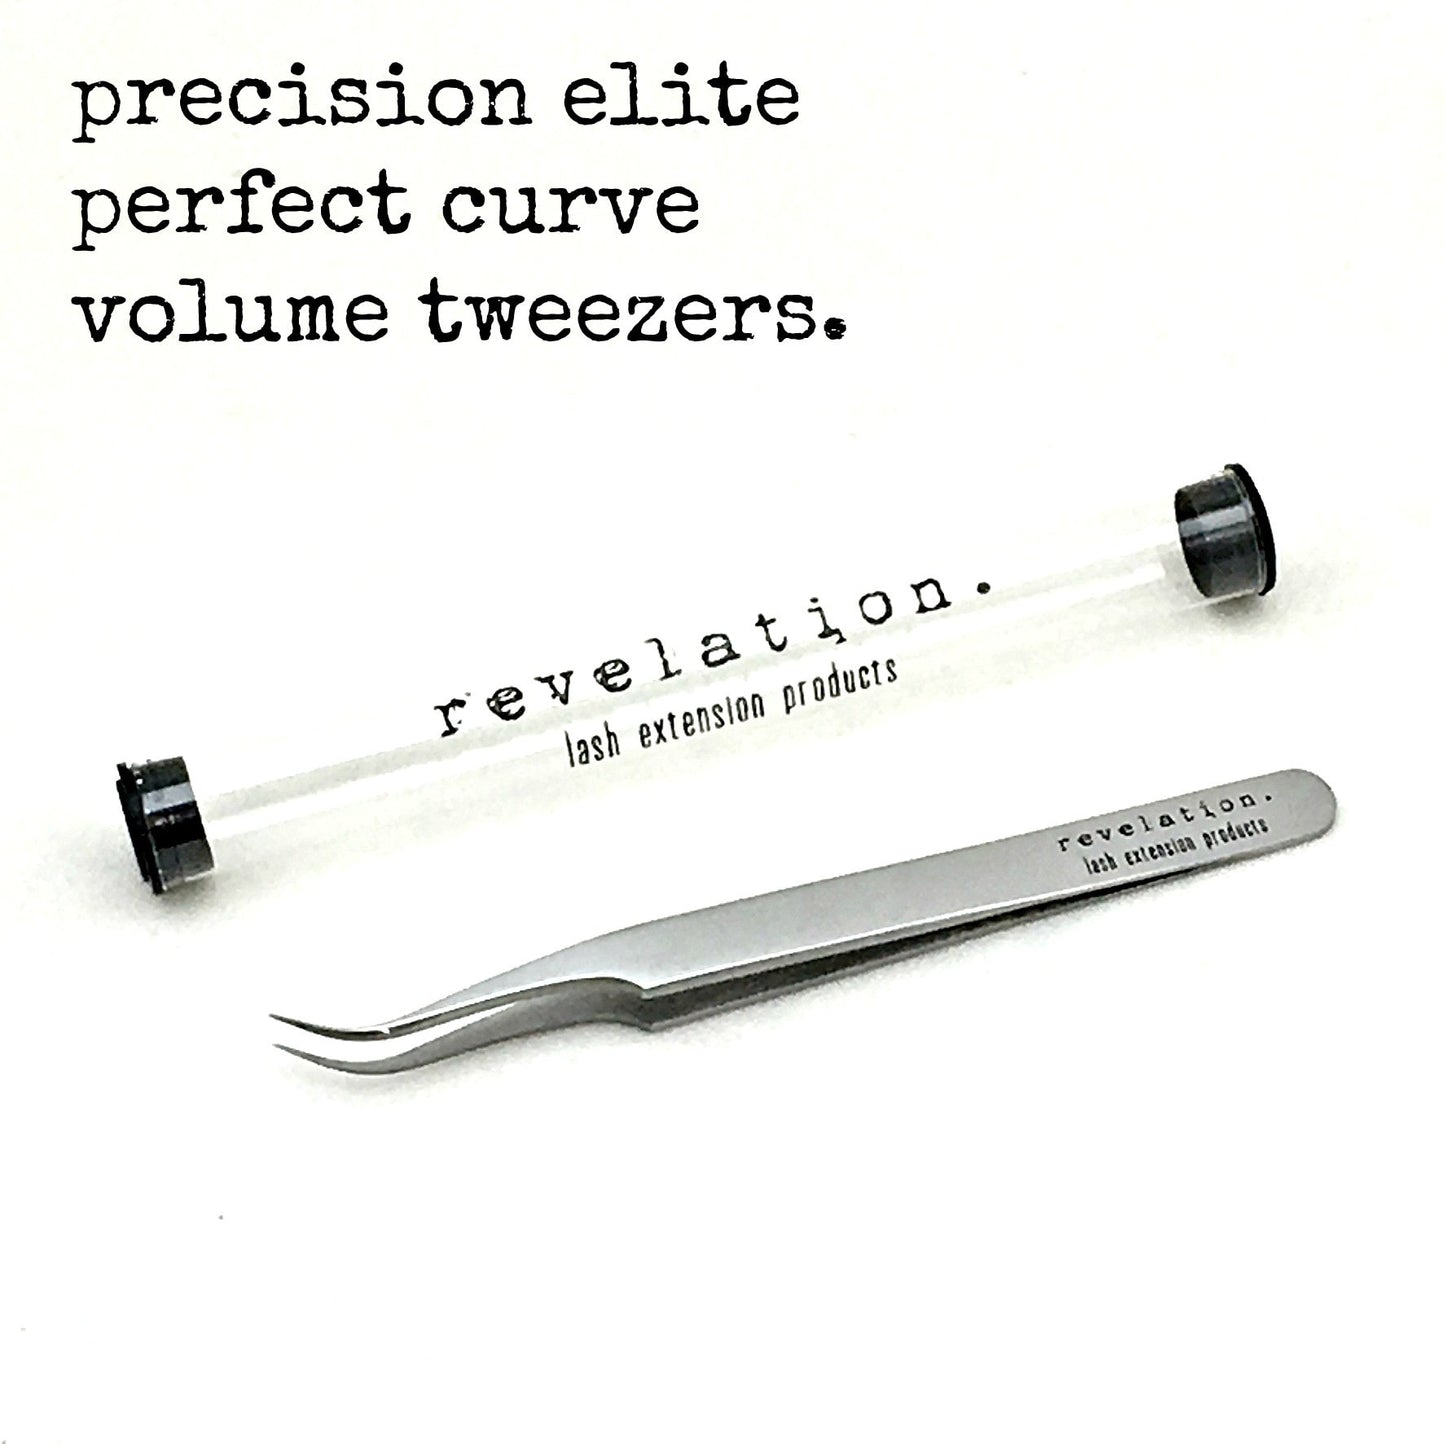 Precision Elite Perfect Curve Volume Tweezers- by Revelation.